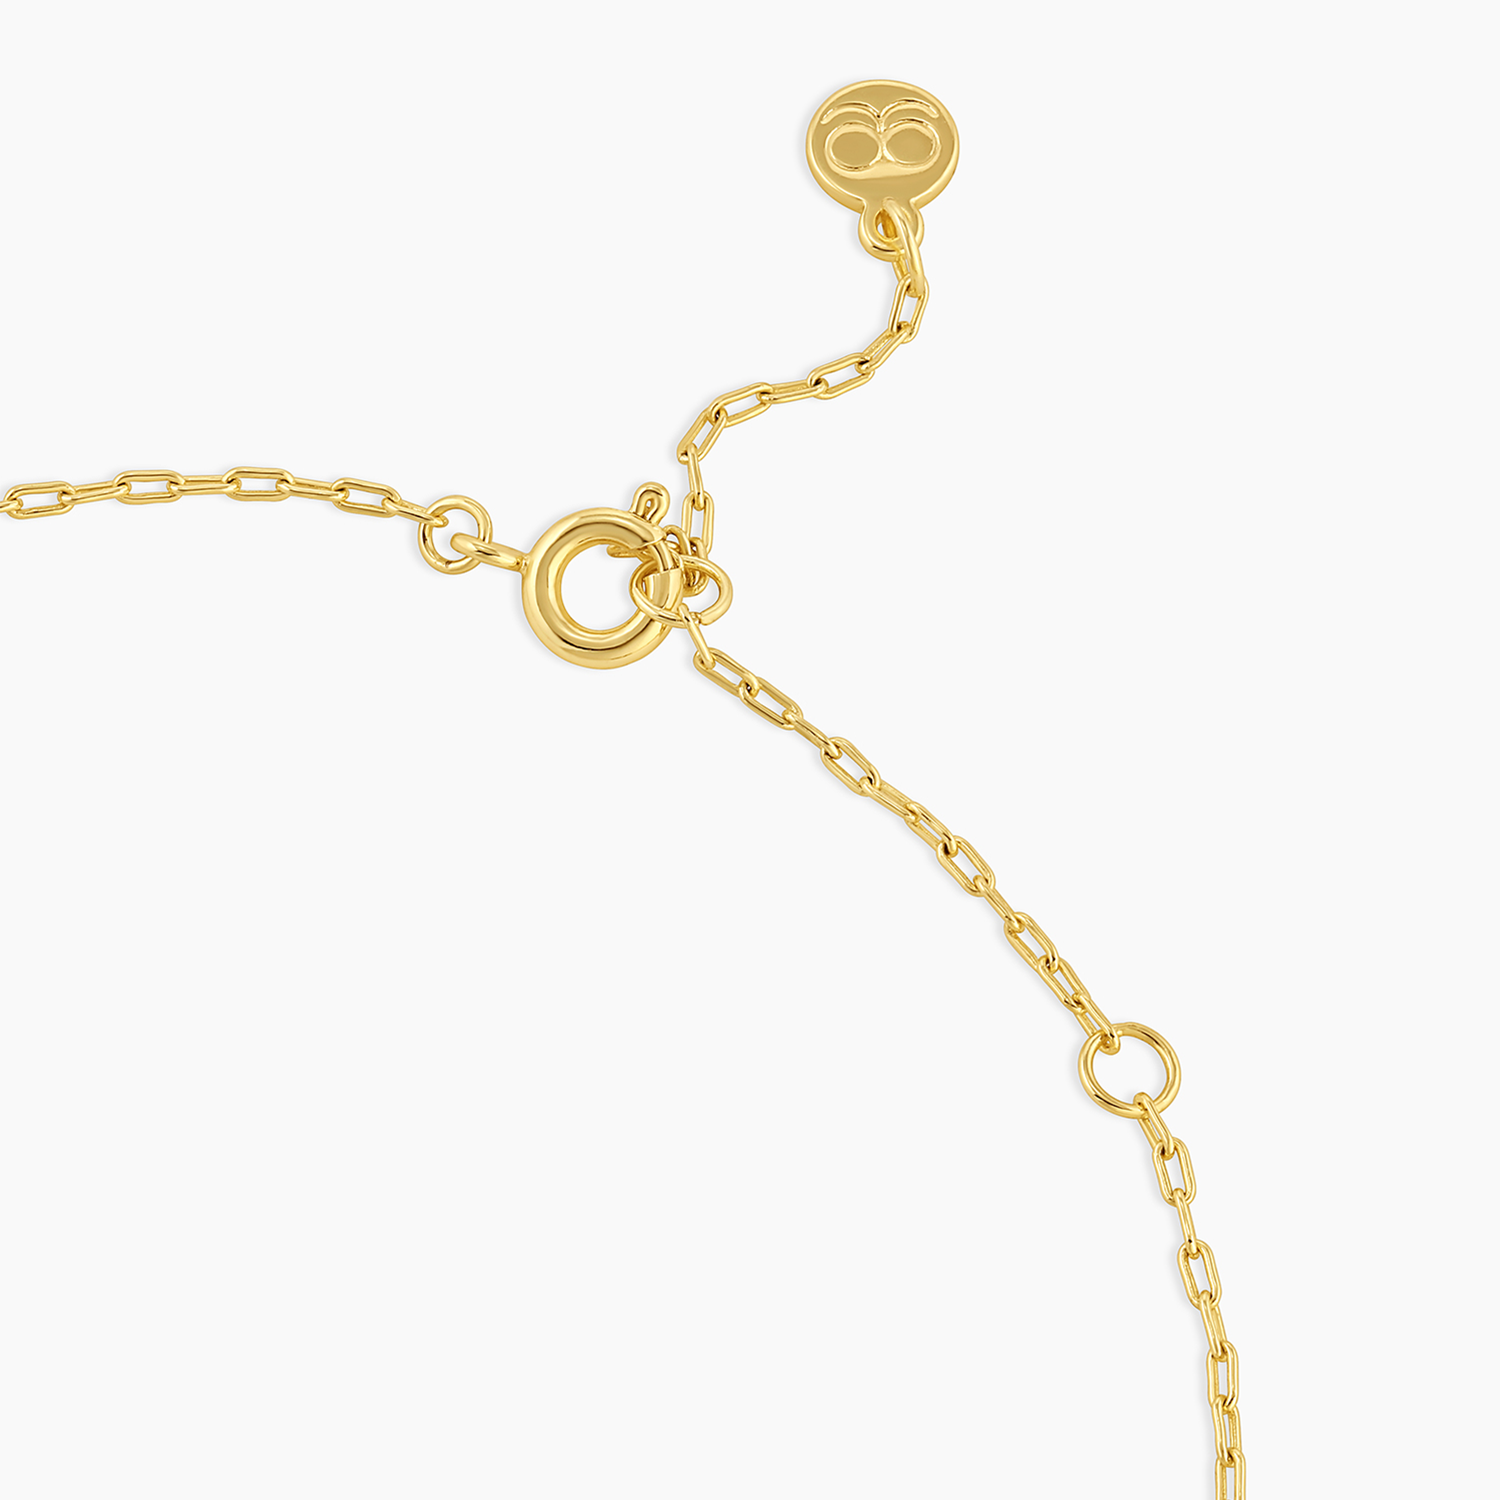 Gorjana Parker Mini Necklace Gold